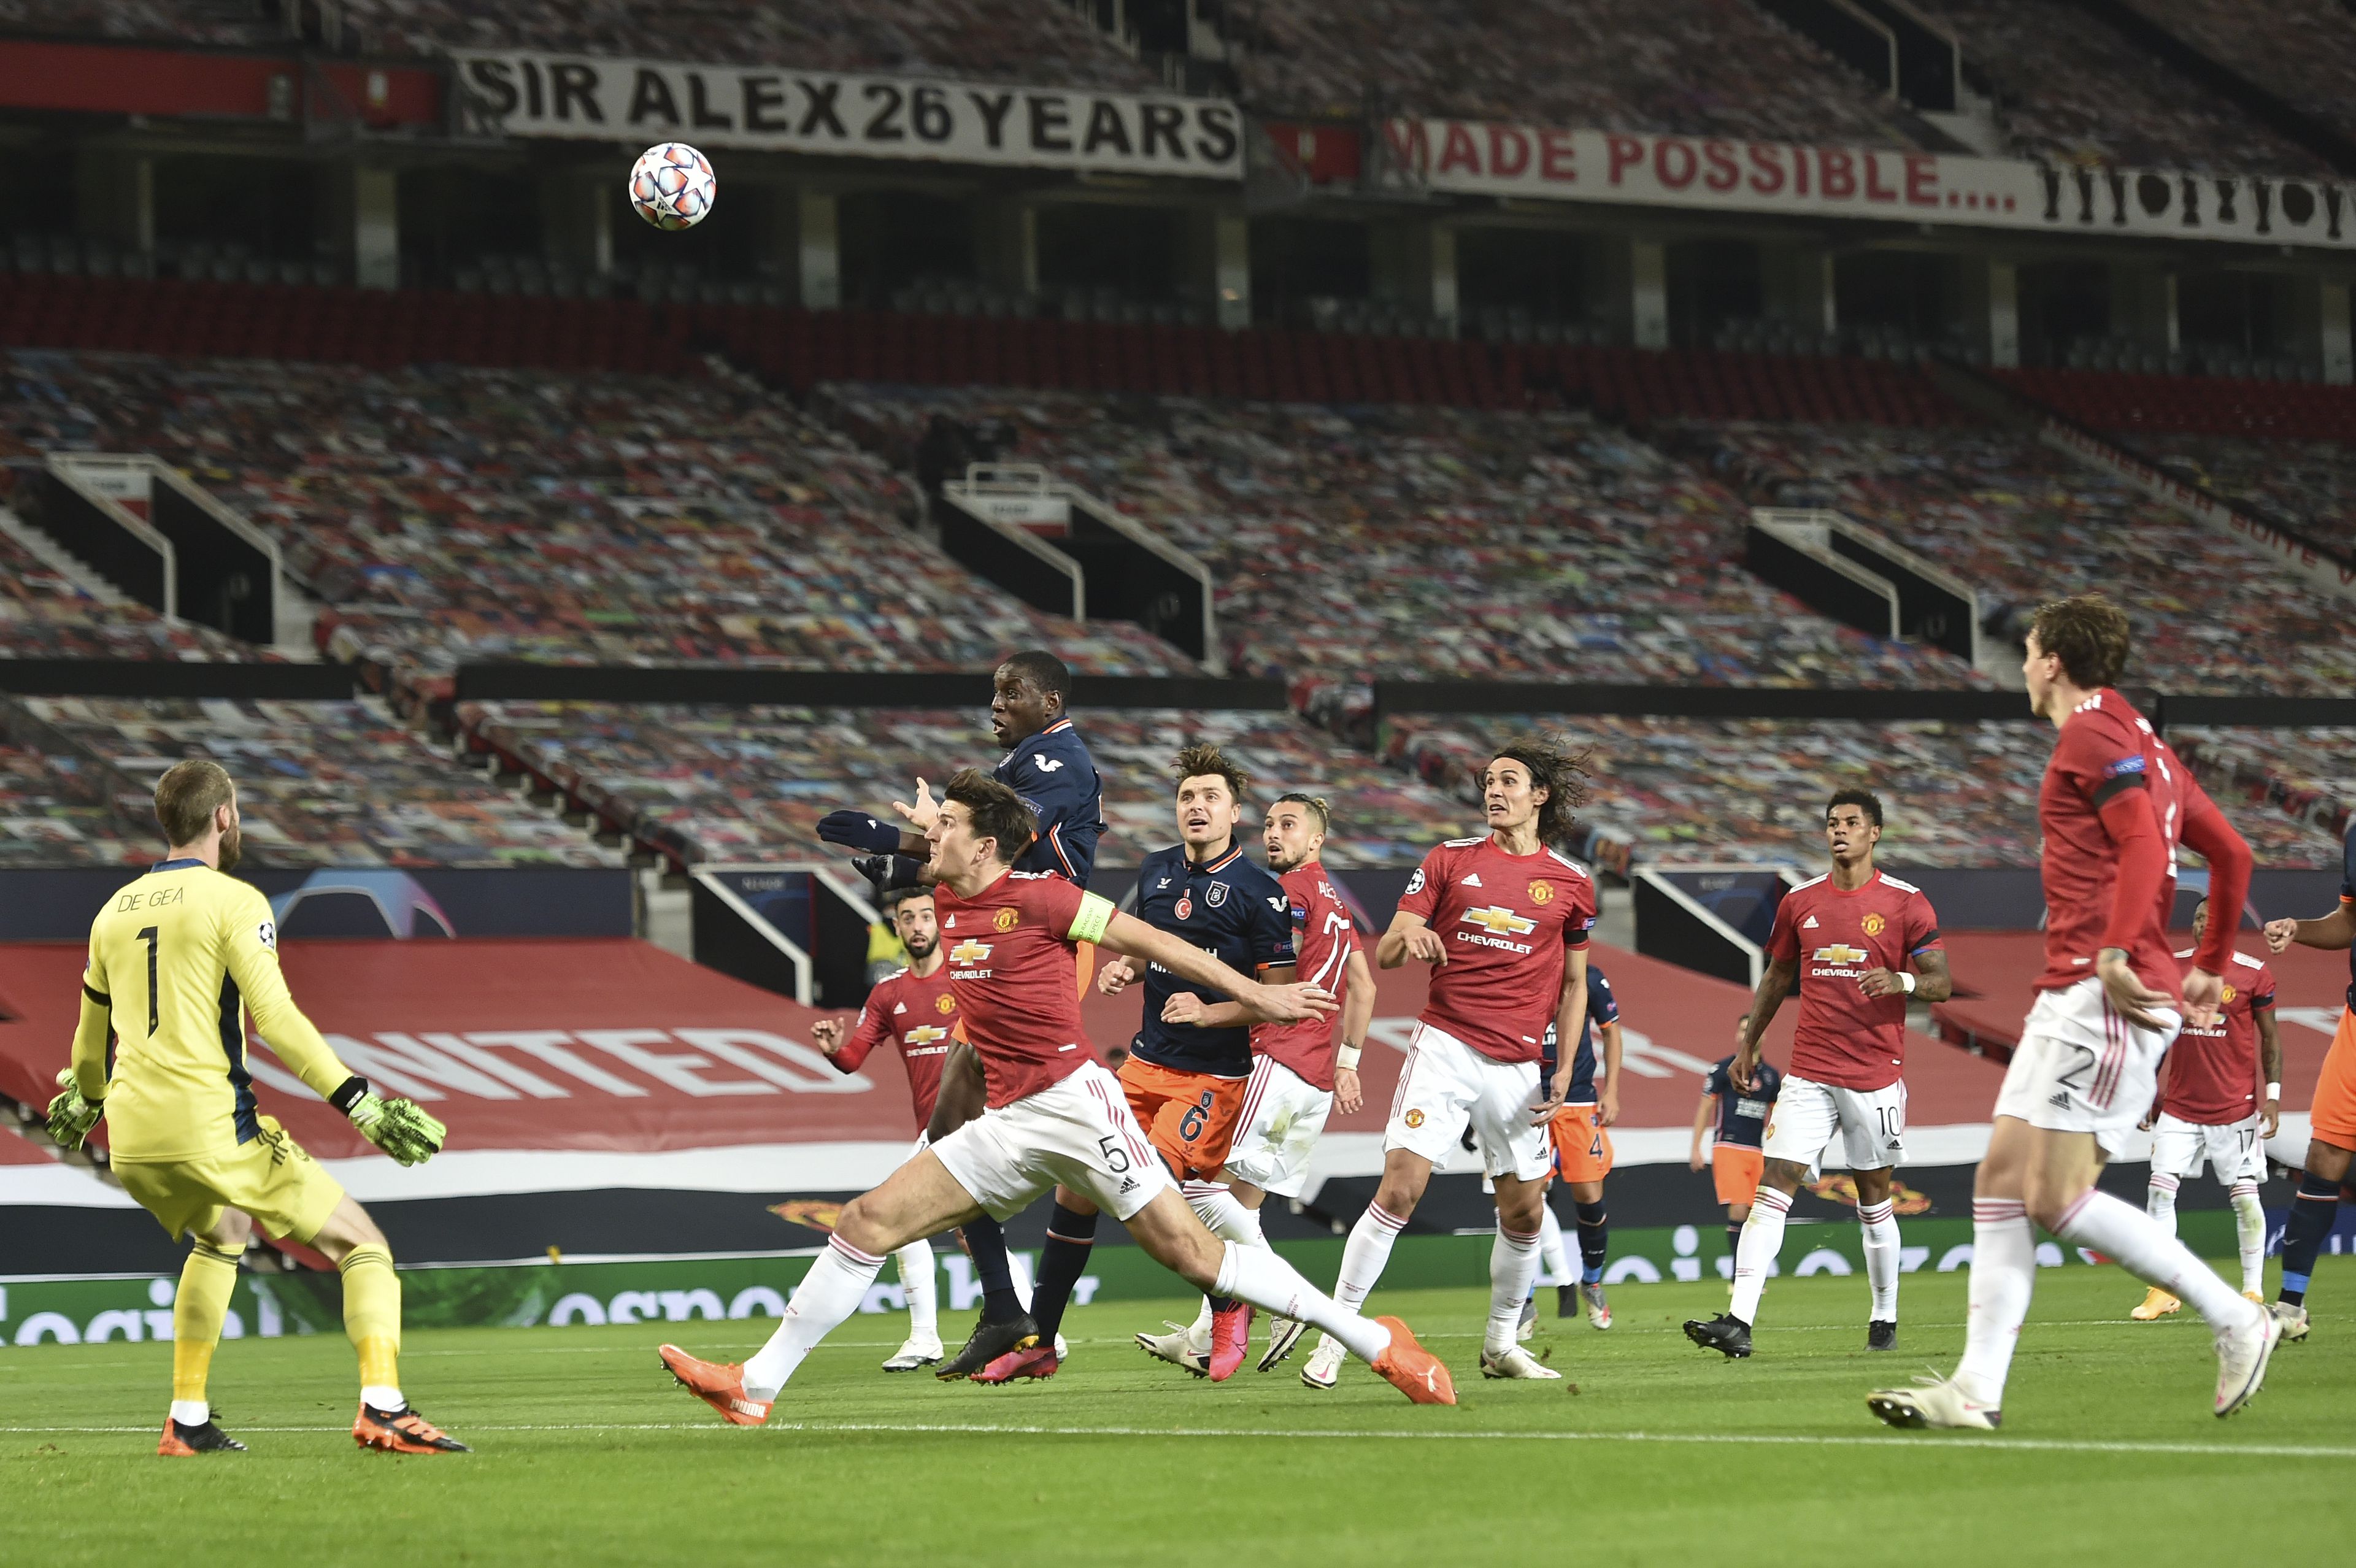 A Manchester United a török Basaksehir elleni, szerdai BL-meccsen. / Fotó: EPA/Peter Powell.